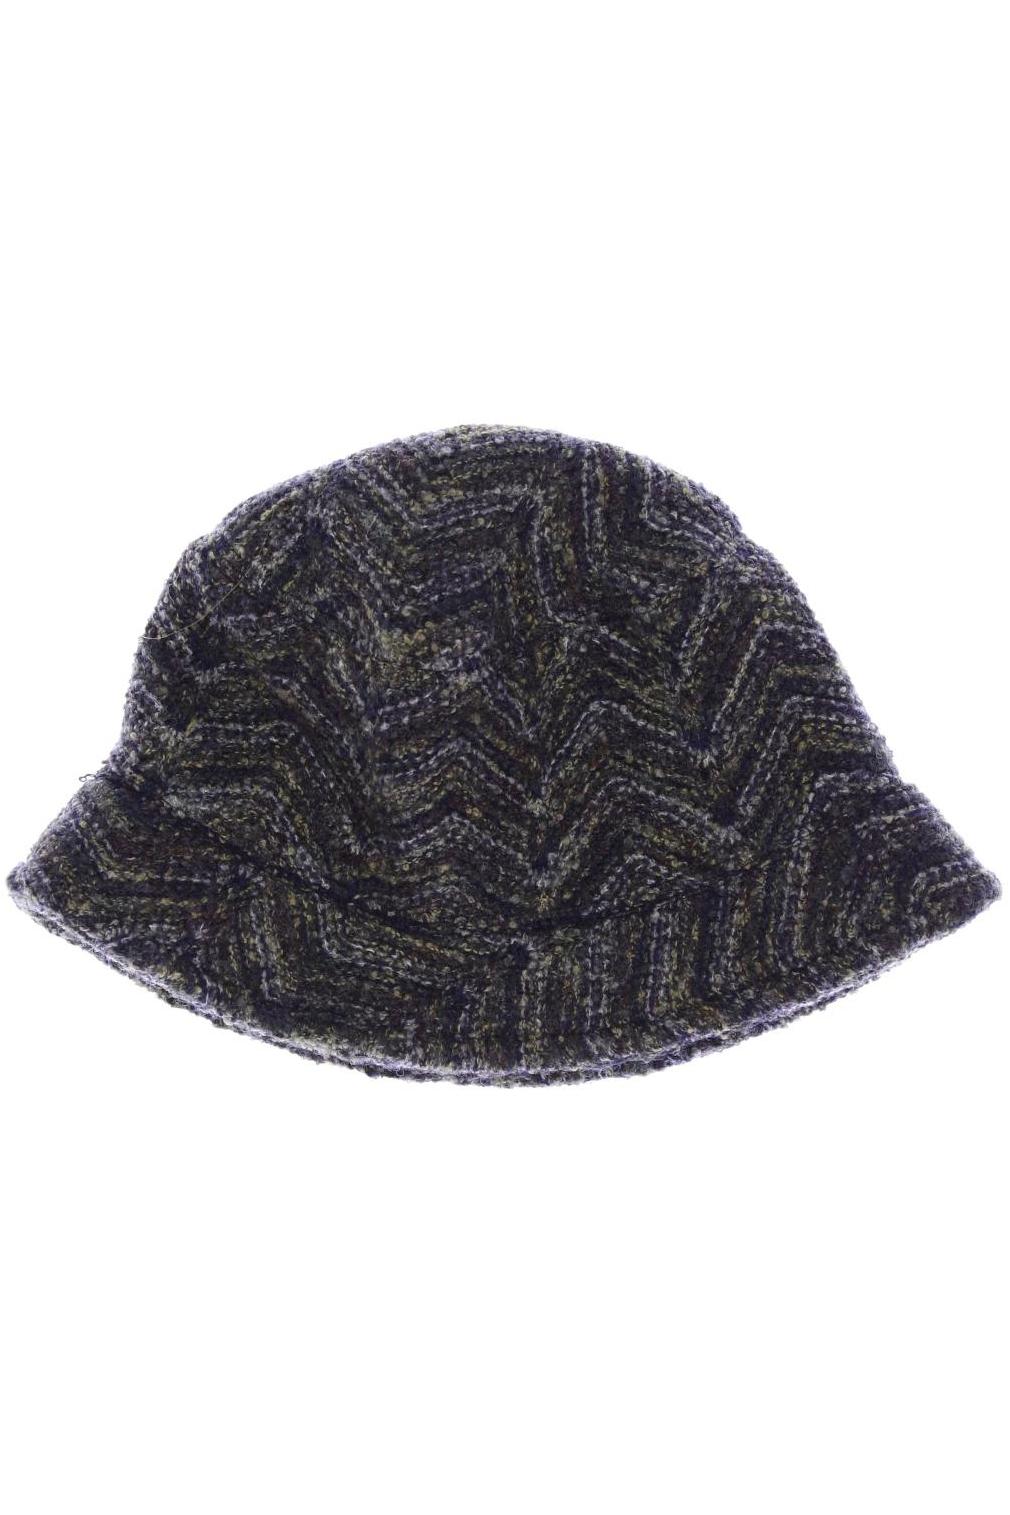 GAP Damen Hut/Mütze, grün, Gr. 54 von GAP